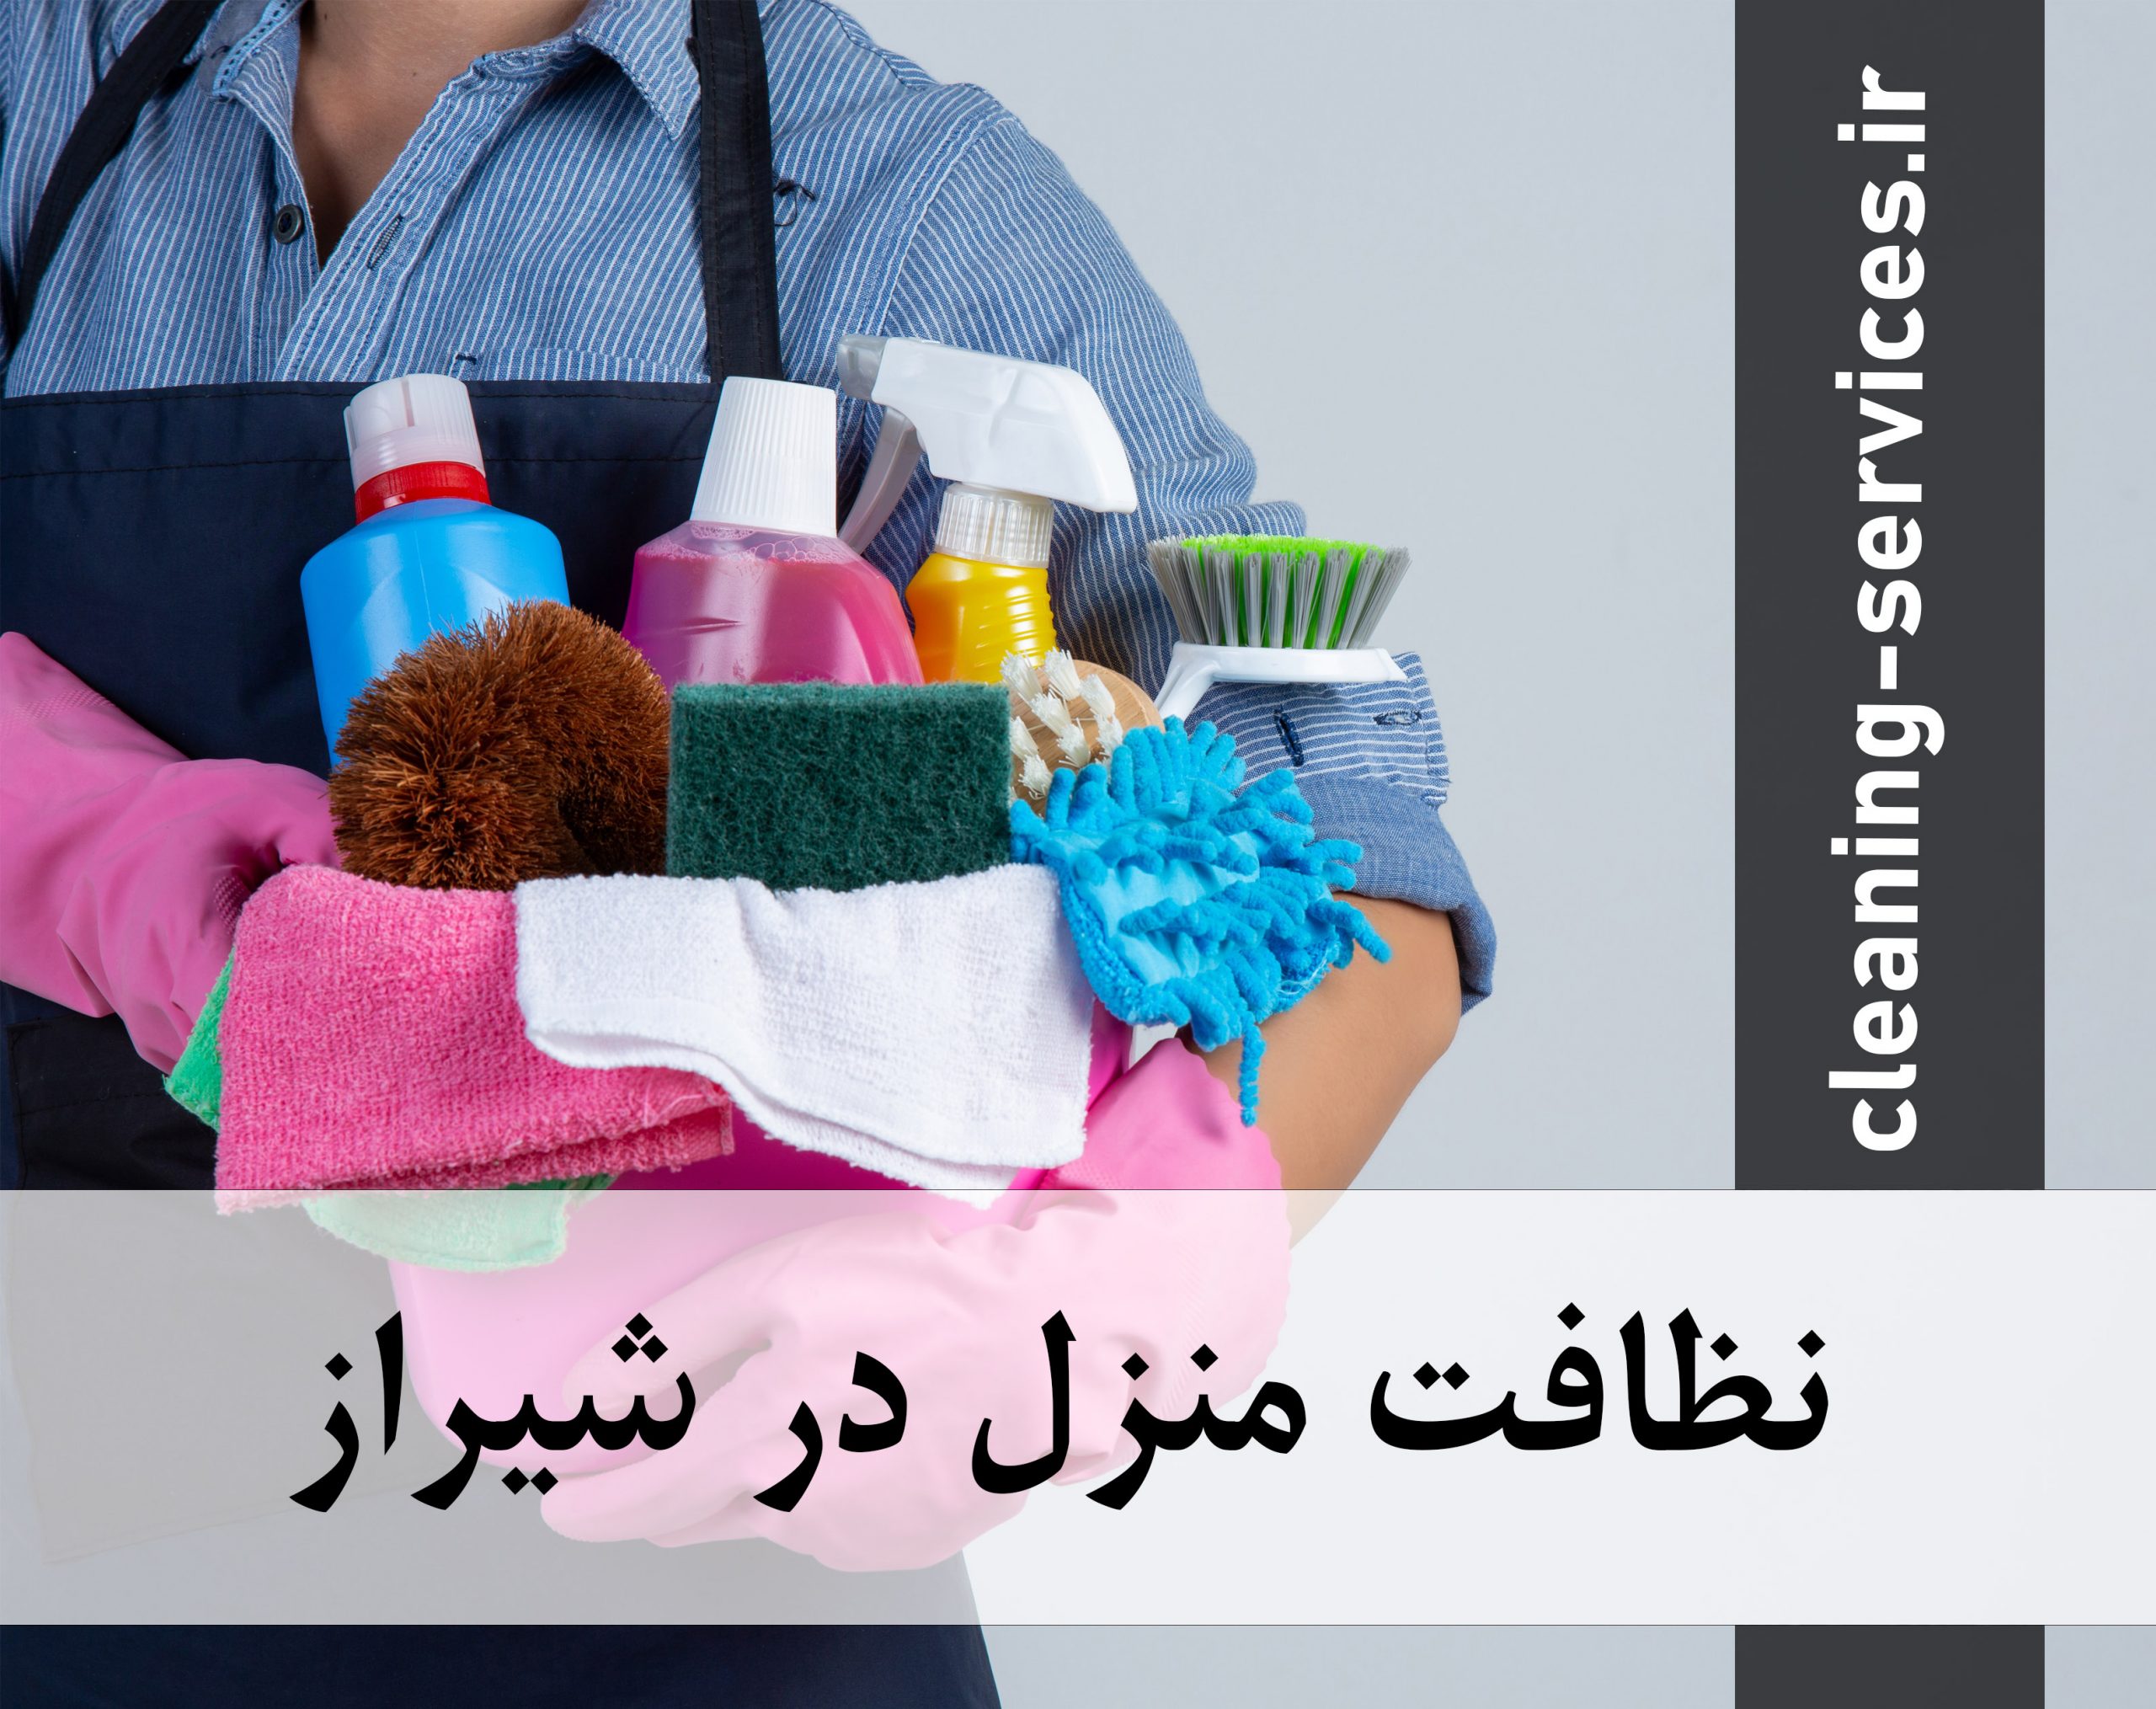 نظافت منزل در شیراز